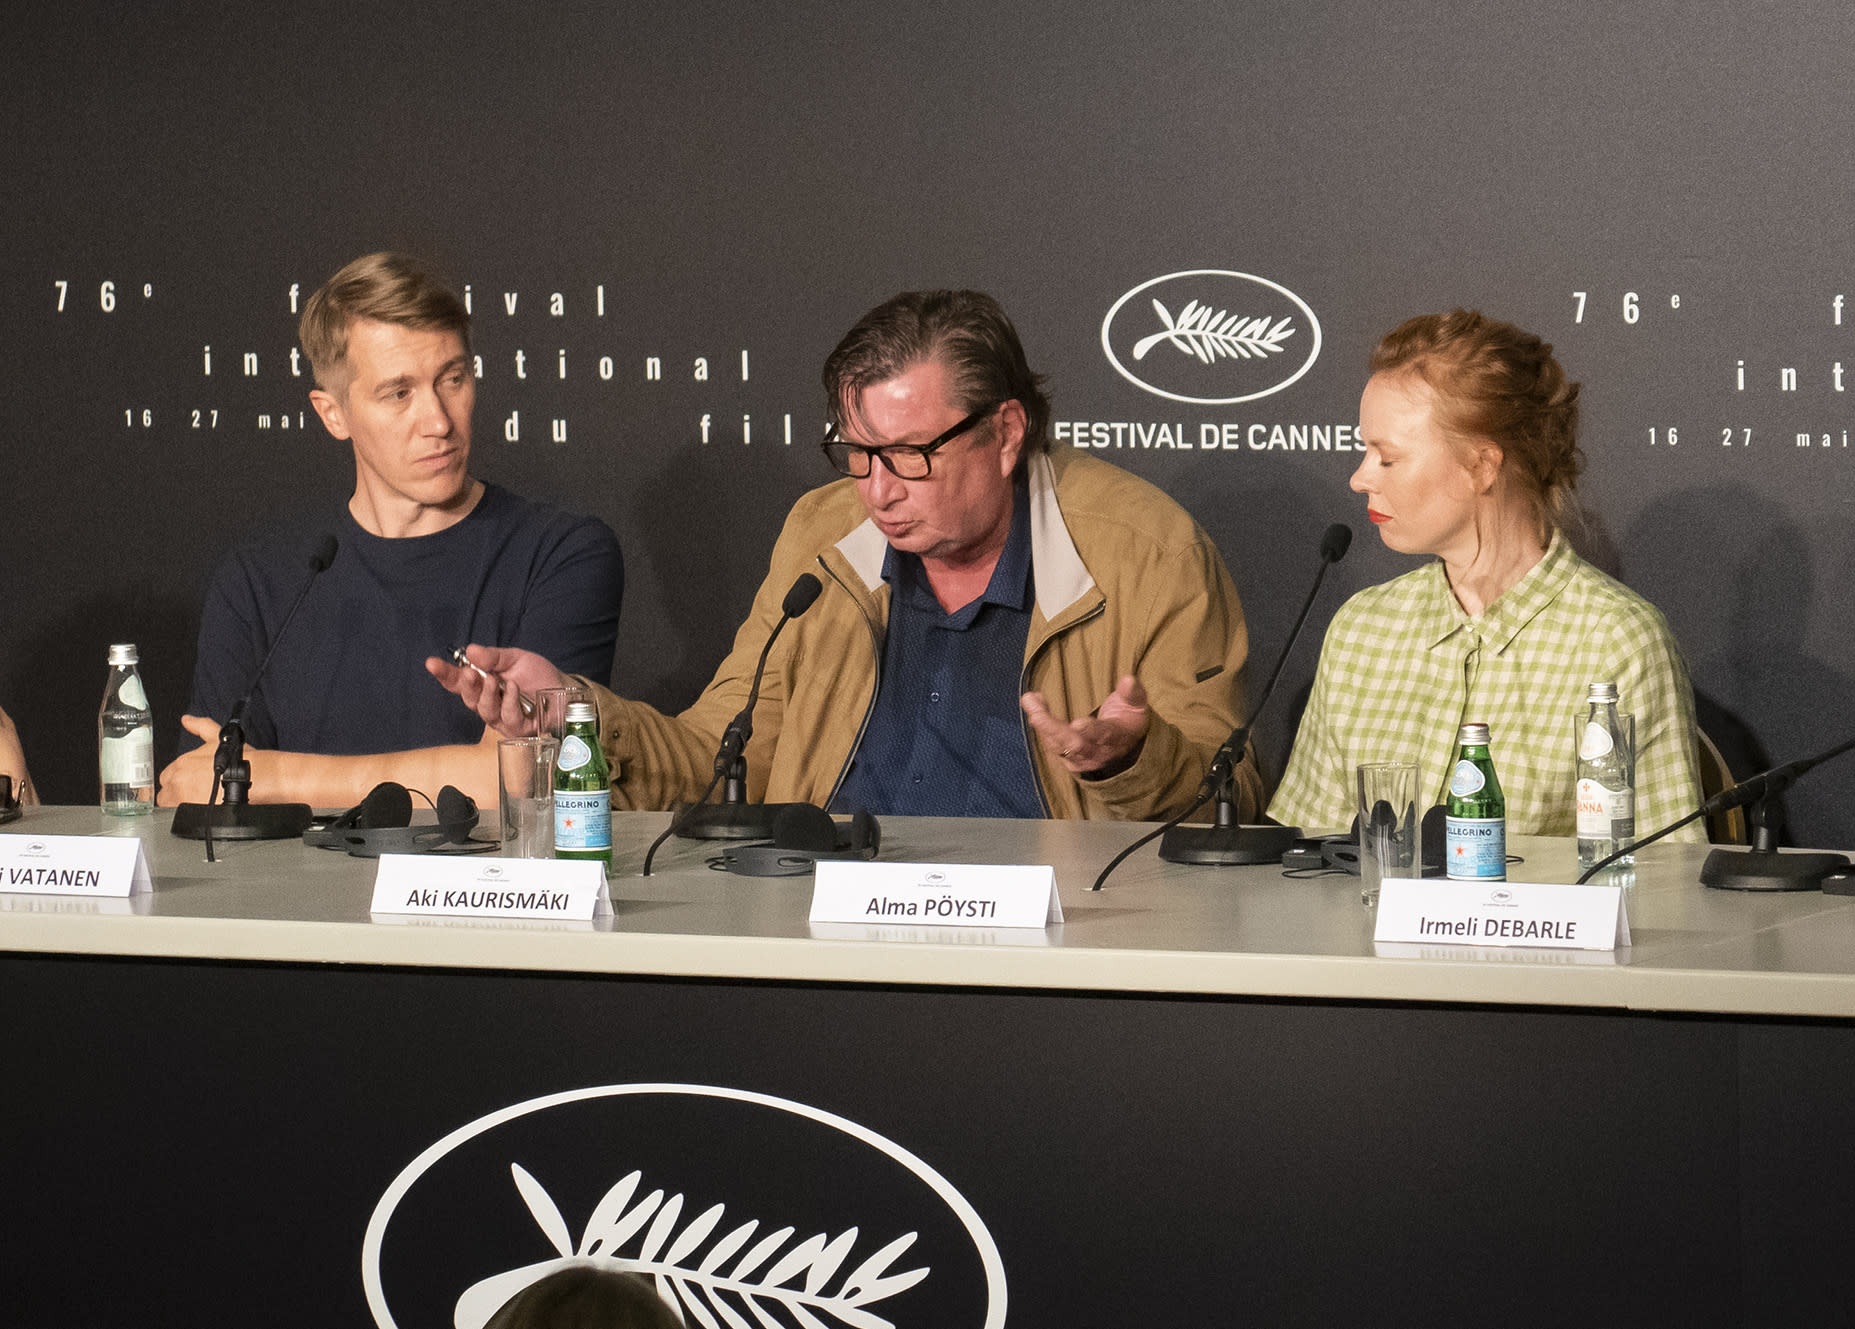 Las estrellas de Hojas caídas de Kaurismäki: "Sin presión" sobre los posibles premios de Cannes